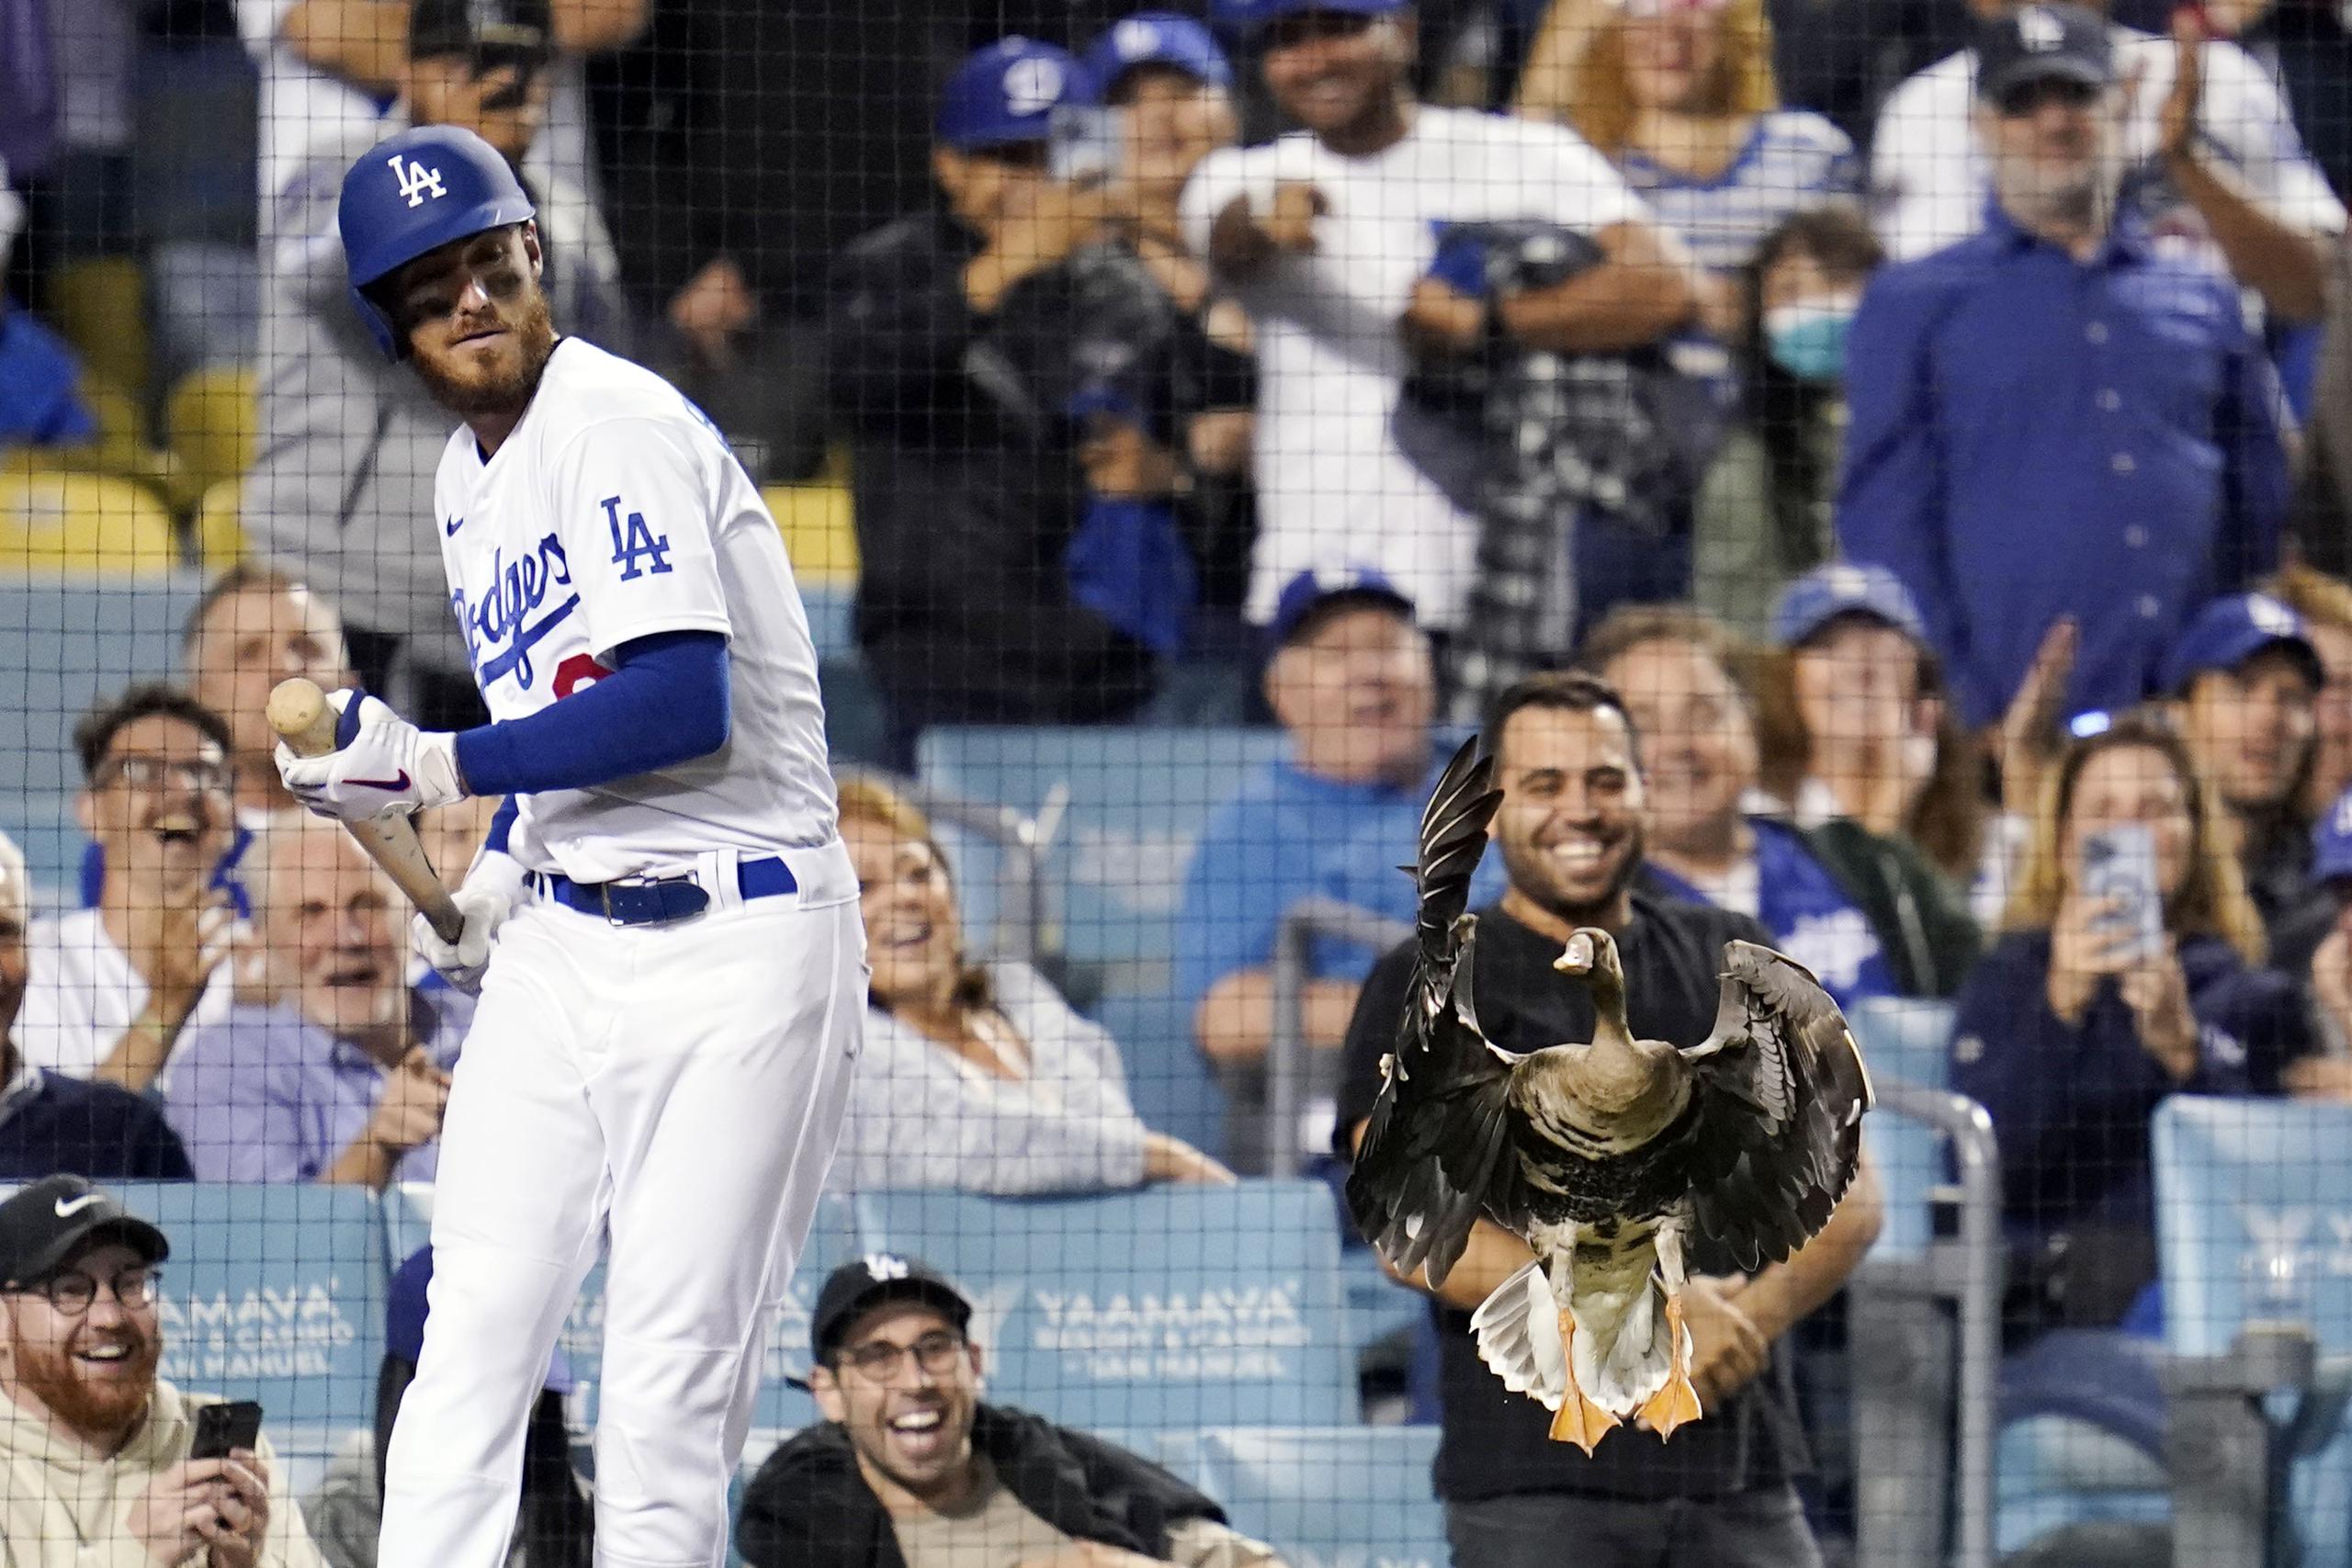 La aparición del ave hizo reír hasta a los aficionados de los Dodgers, quienes estaban perdiendo y perdieron eventualmente el partido.